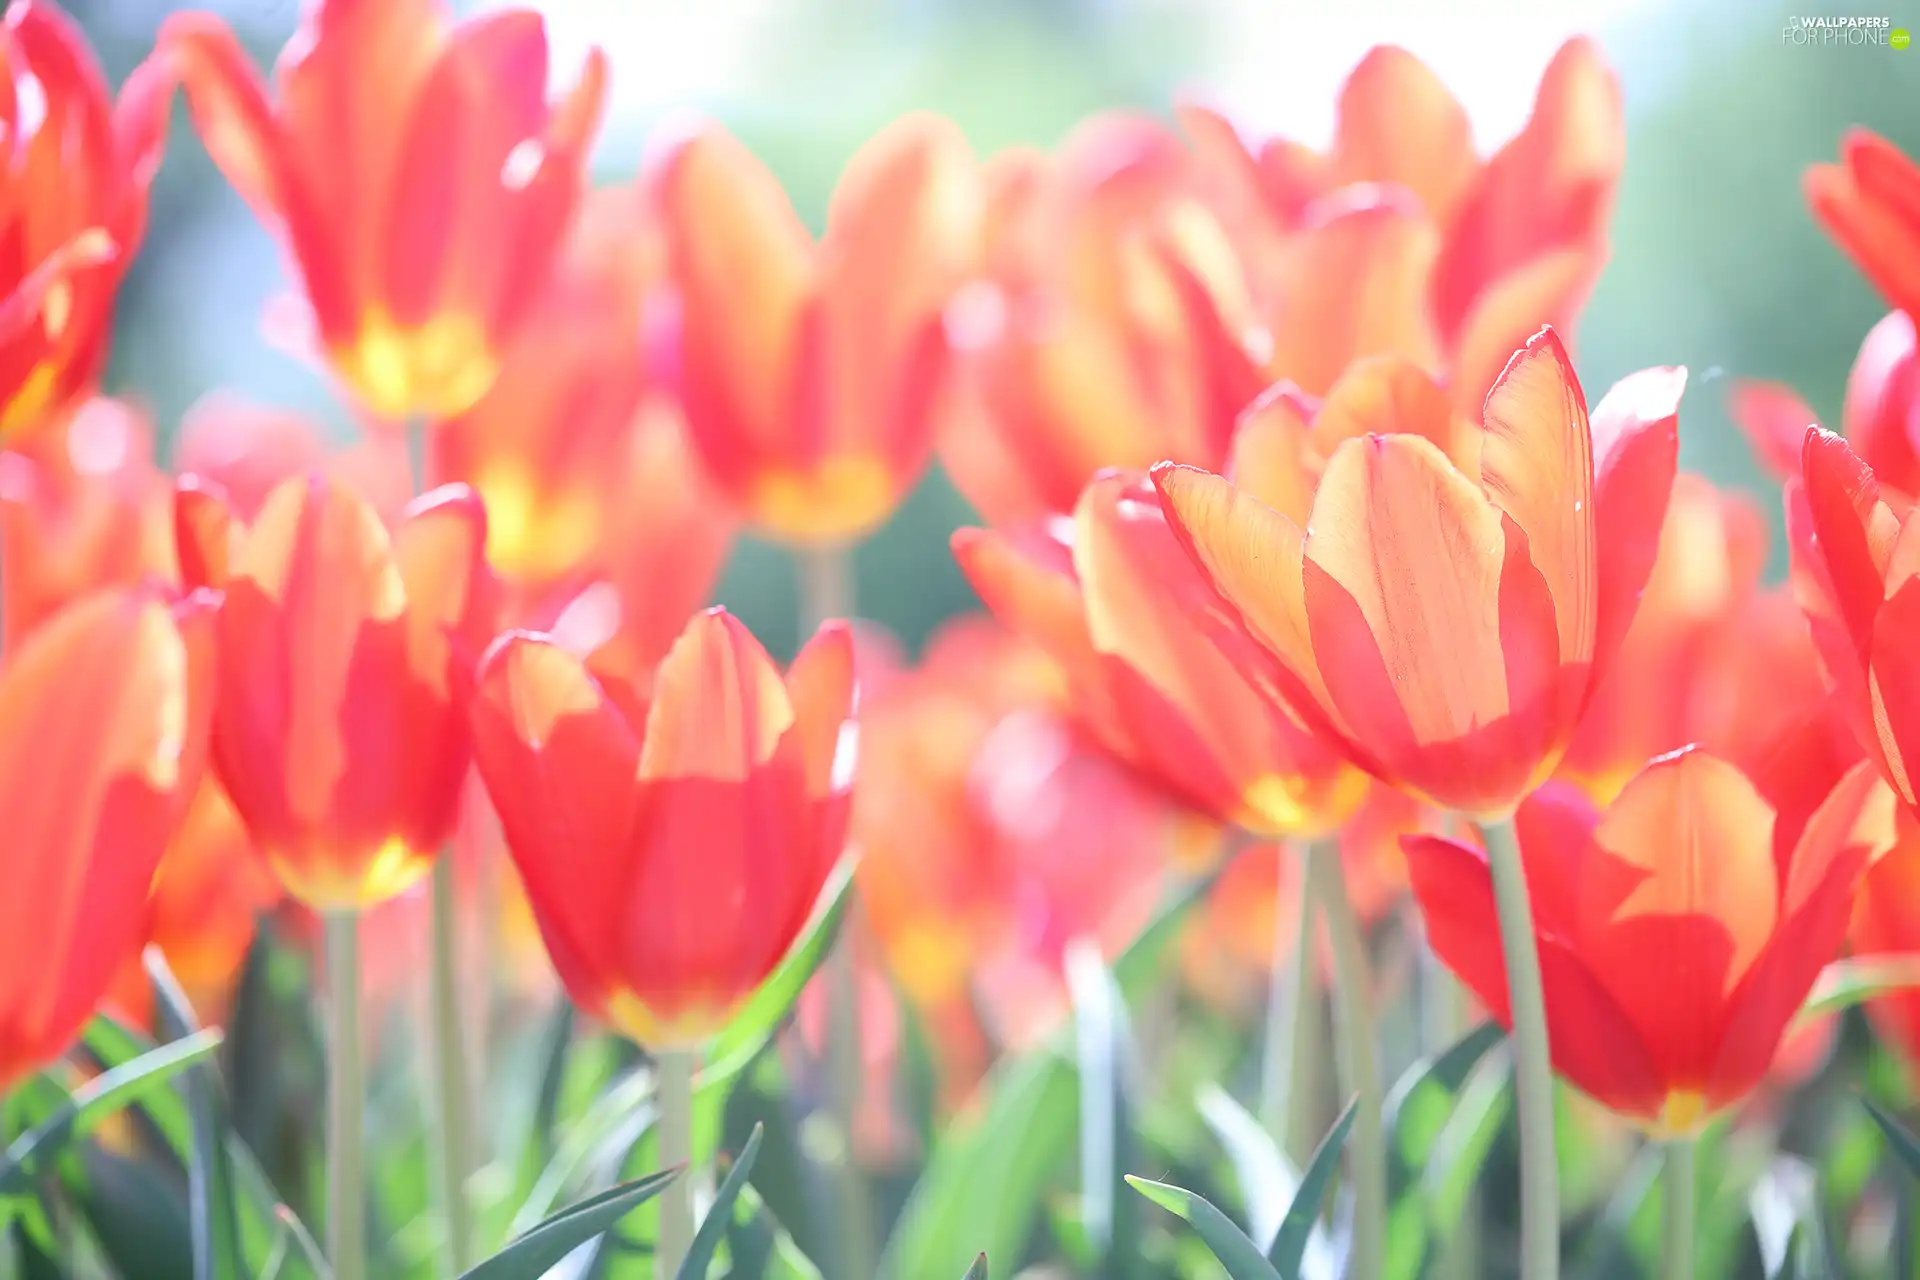 Tulips, Flowers, sun, Red, illuminated